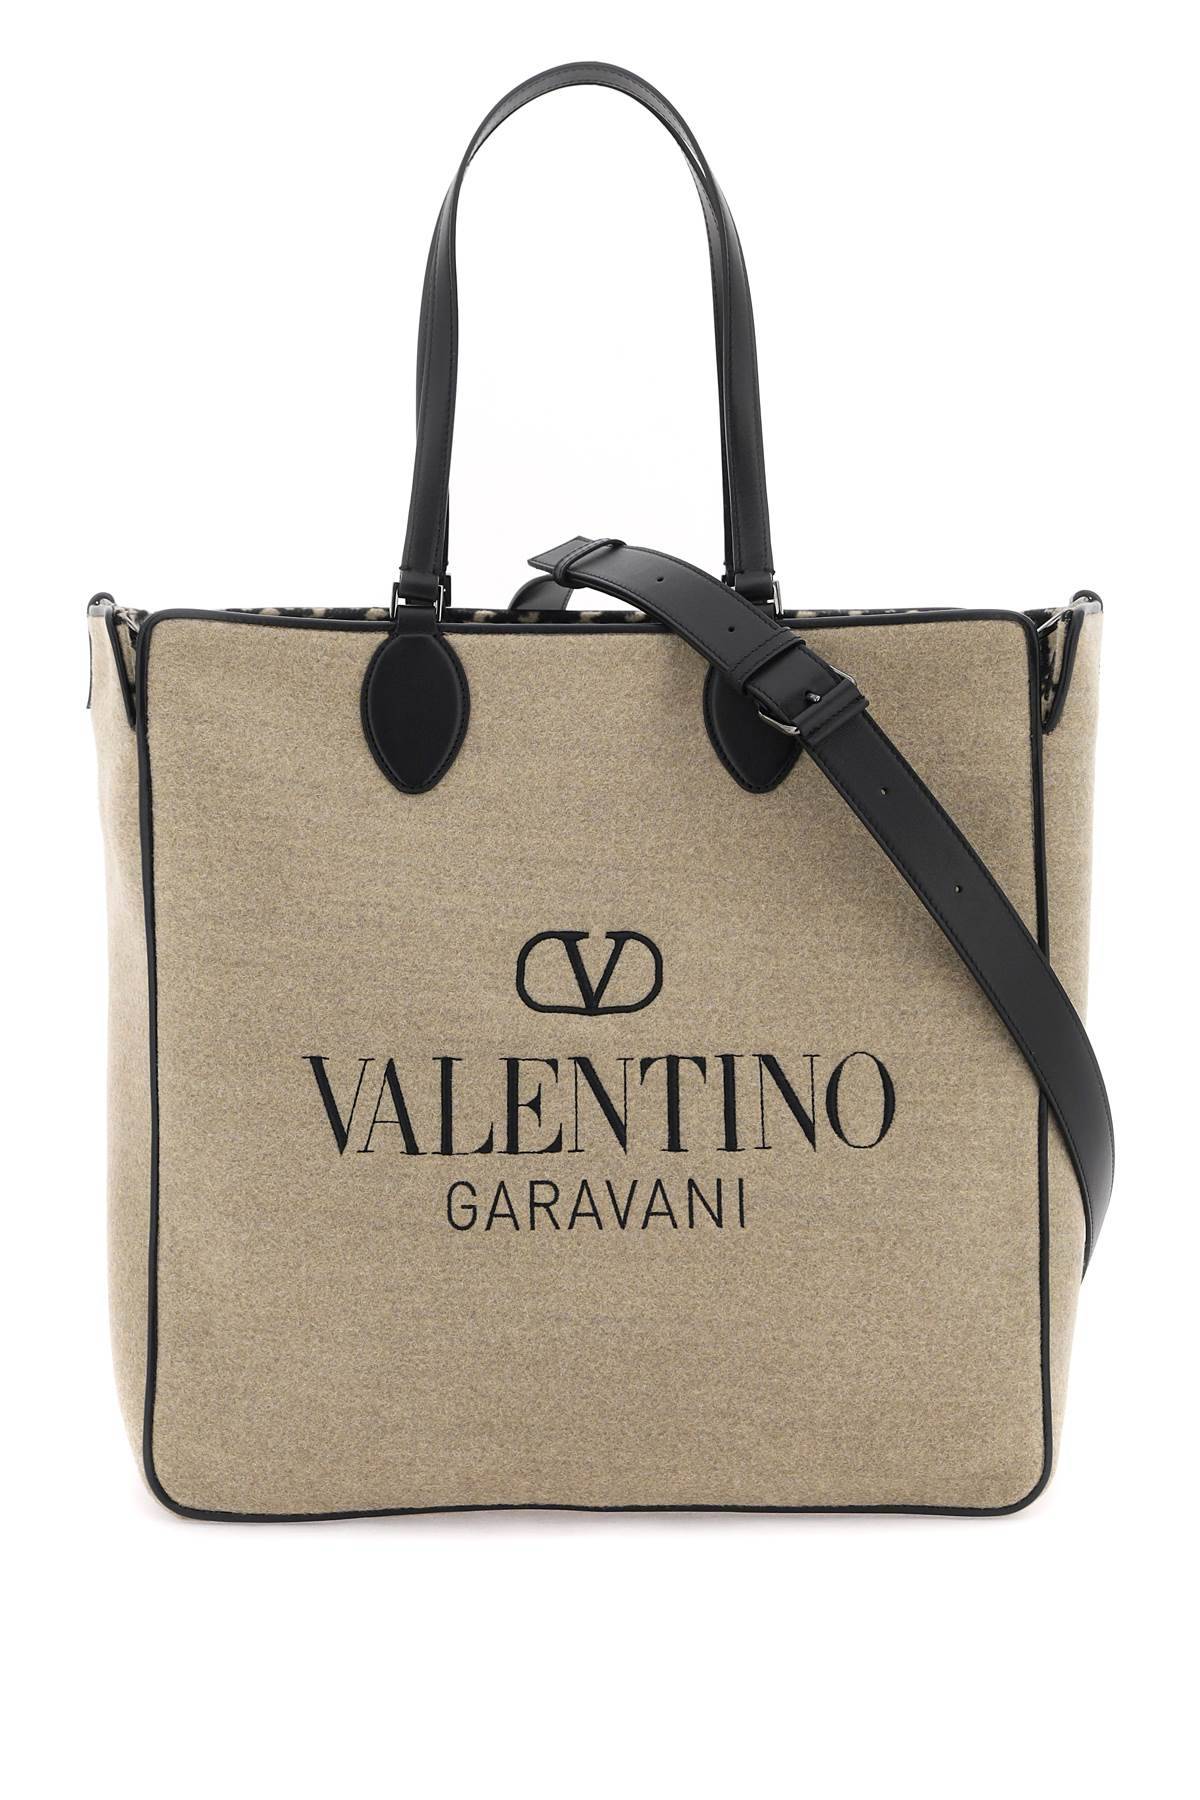 Valentino Garavani Toile Iconographe Tote Bag In Beige,brown,black